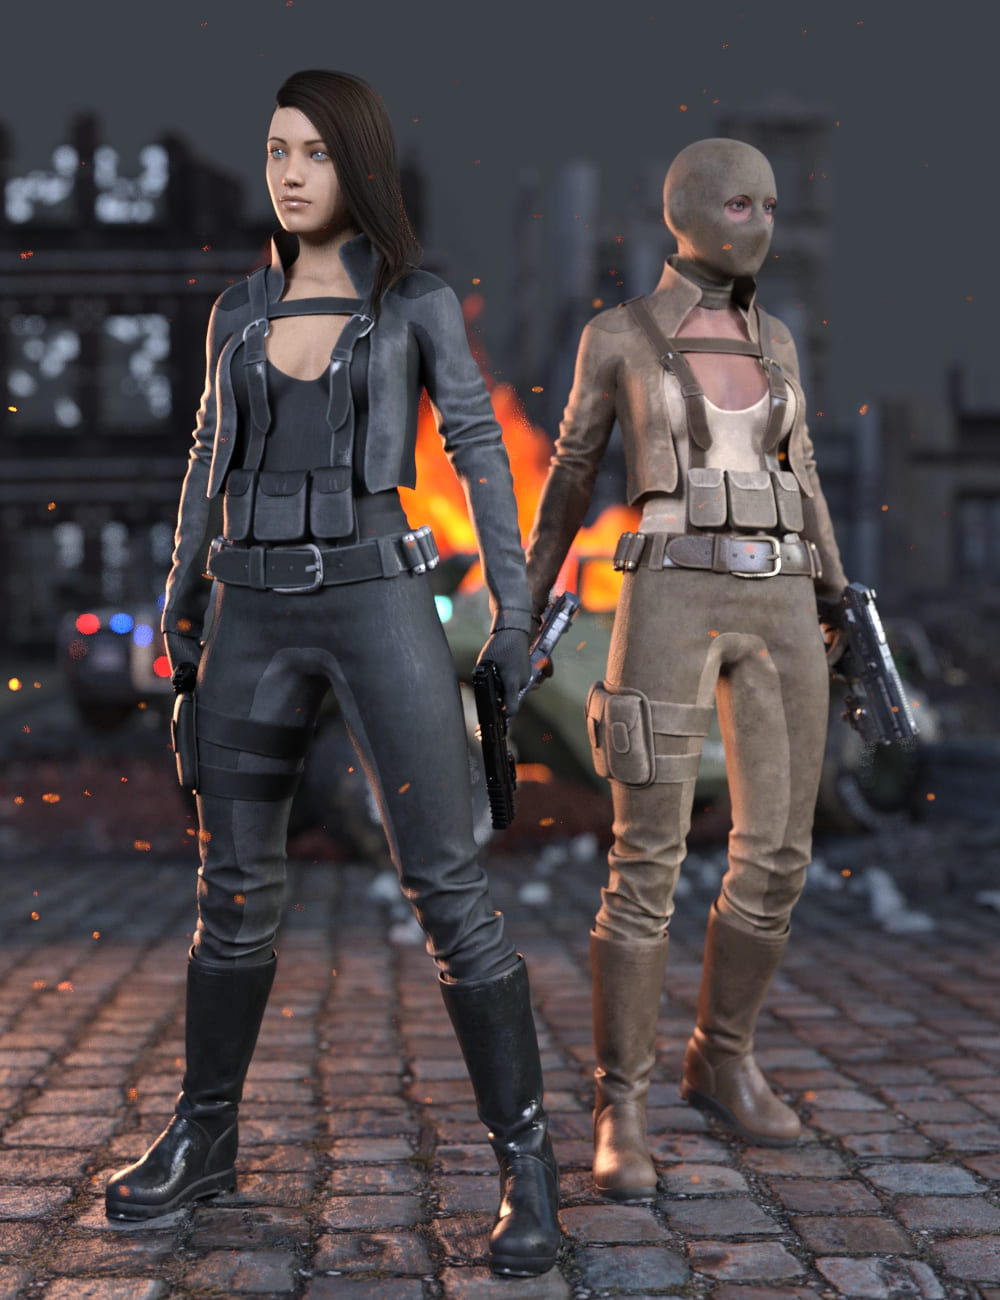 Rebel Militia Outfit for Genesis 8.1 Females_DAZ3D下载站